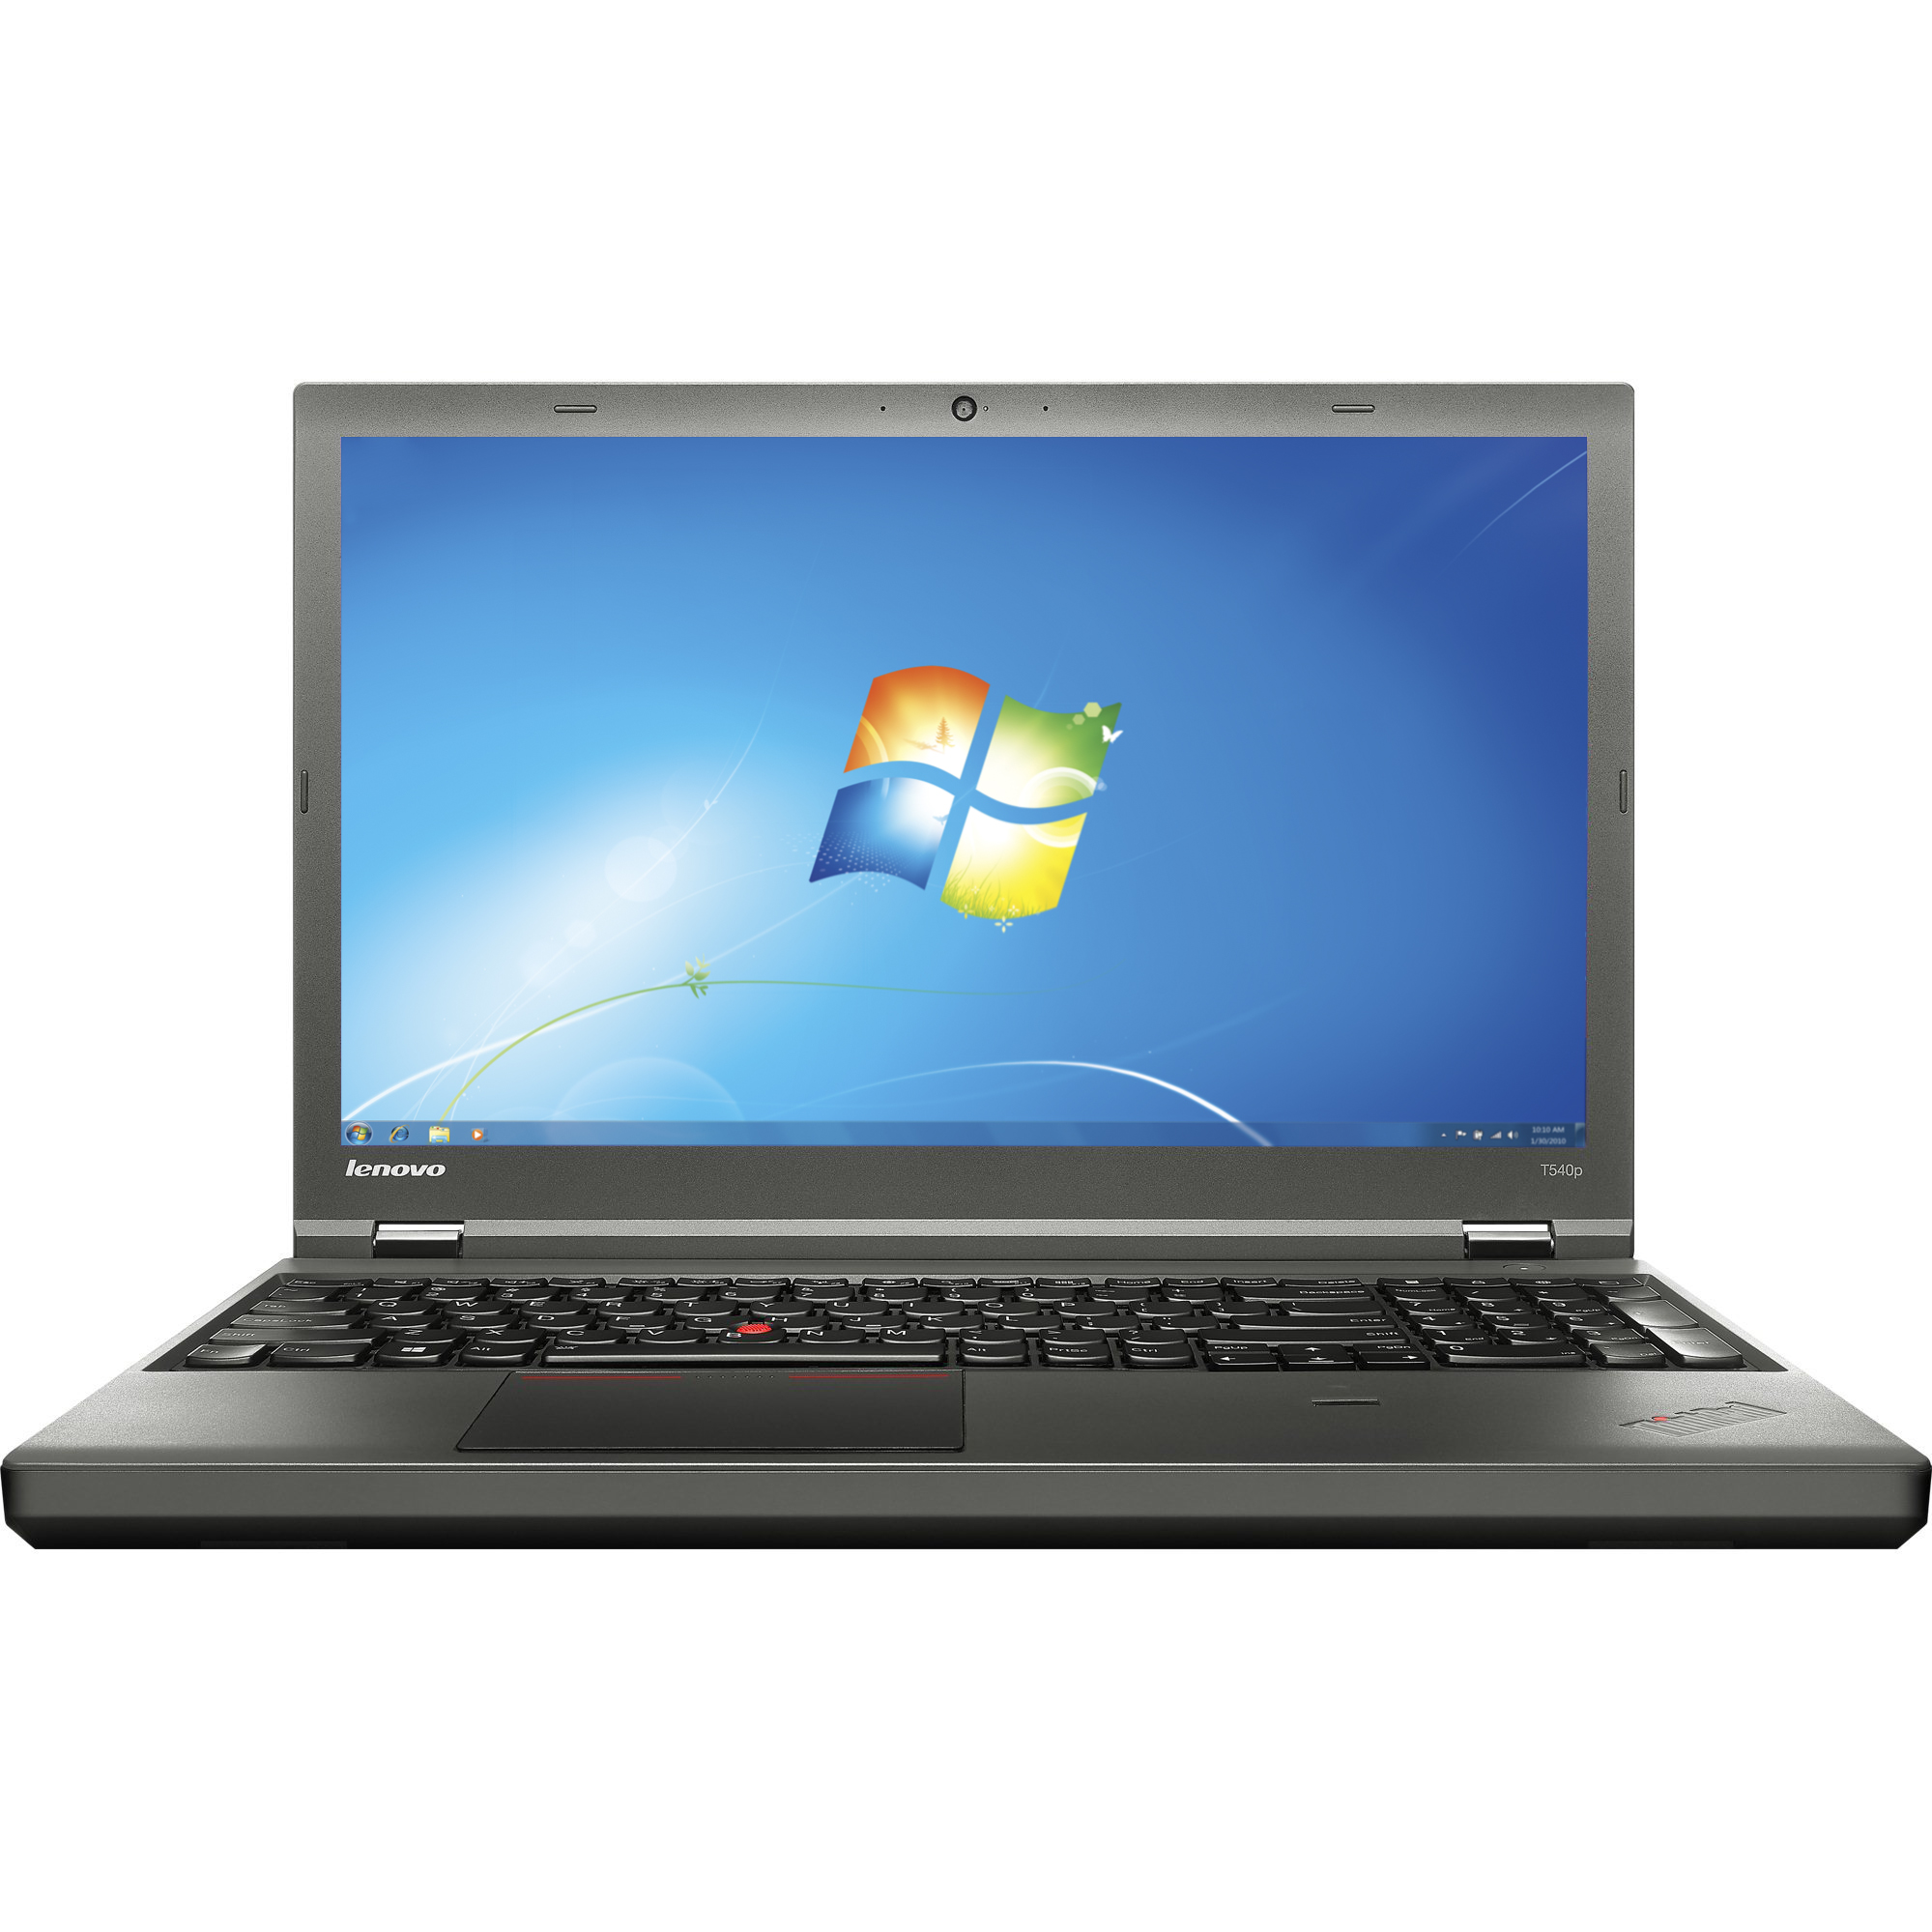 Notebook Lenovo ThinkPad T540p 15.6 Full HD Intel Core i5-4210U RAM 4GB SSD 256GB Windows 7 Pro / 10 Pro Negru title=Notebook Lenovo ThinkPad T540p 15.6 Full HD Intel Core i5-4210U RAM 4GB SSD 256GB Windows 7 Pro / 10 Pro Negru